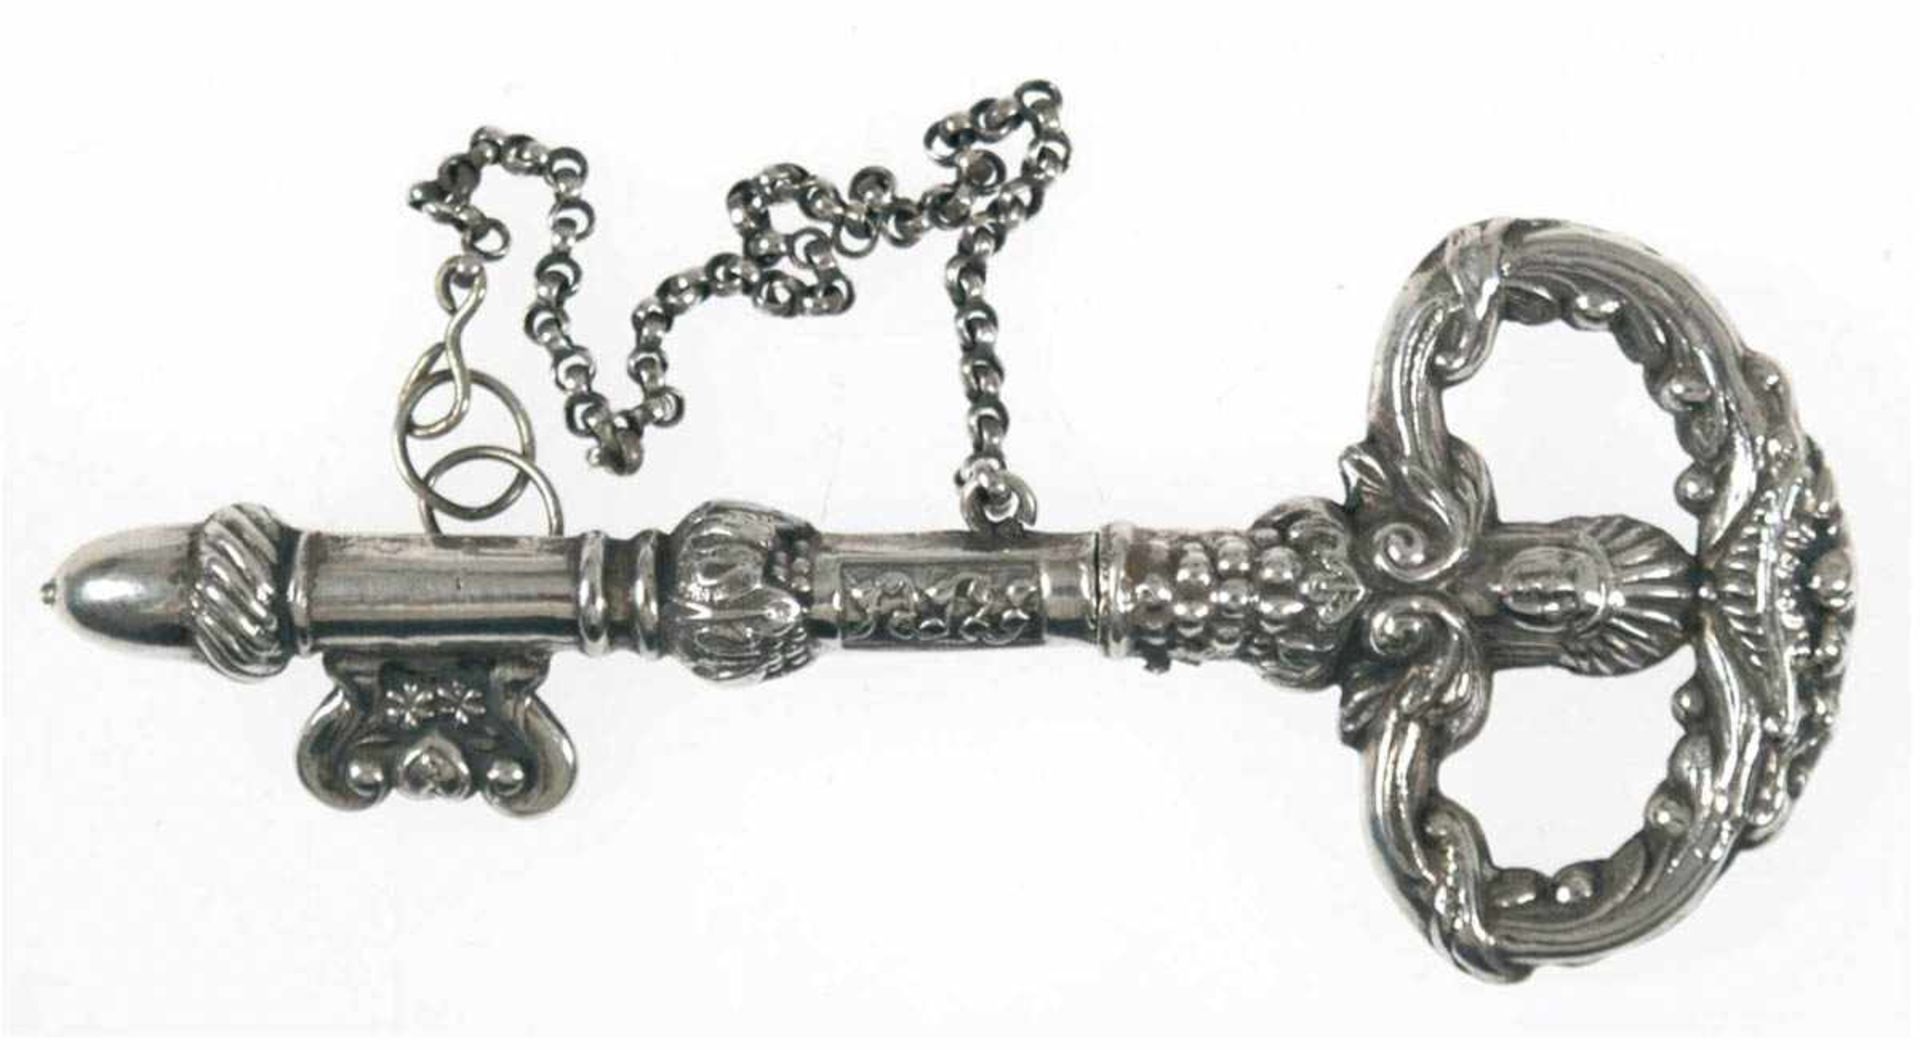 Stricknadelhalter, Schlüsselform, Silber, ca. 13 g, reliefiert, aus zwei mit einer Kettevebundenen